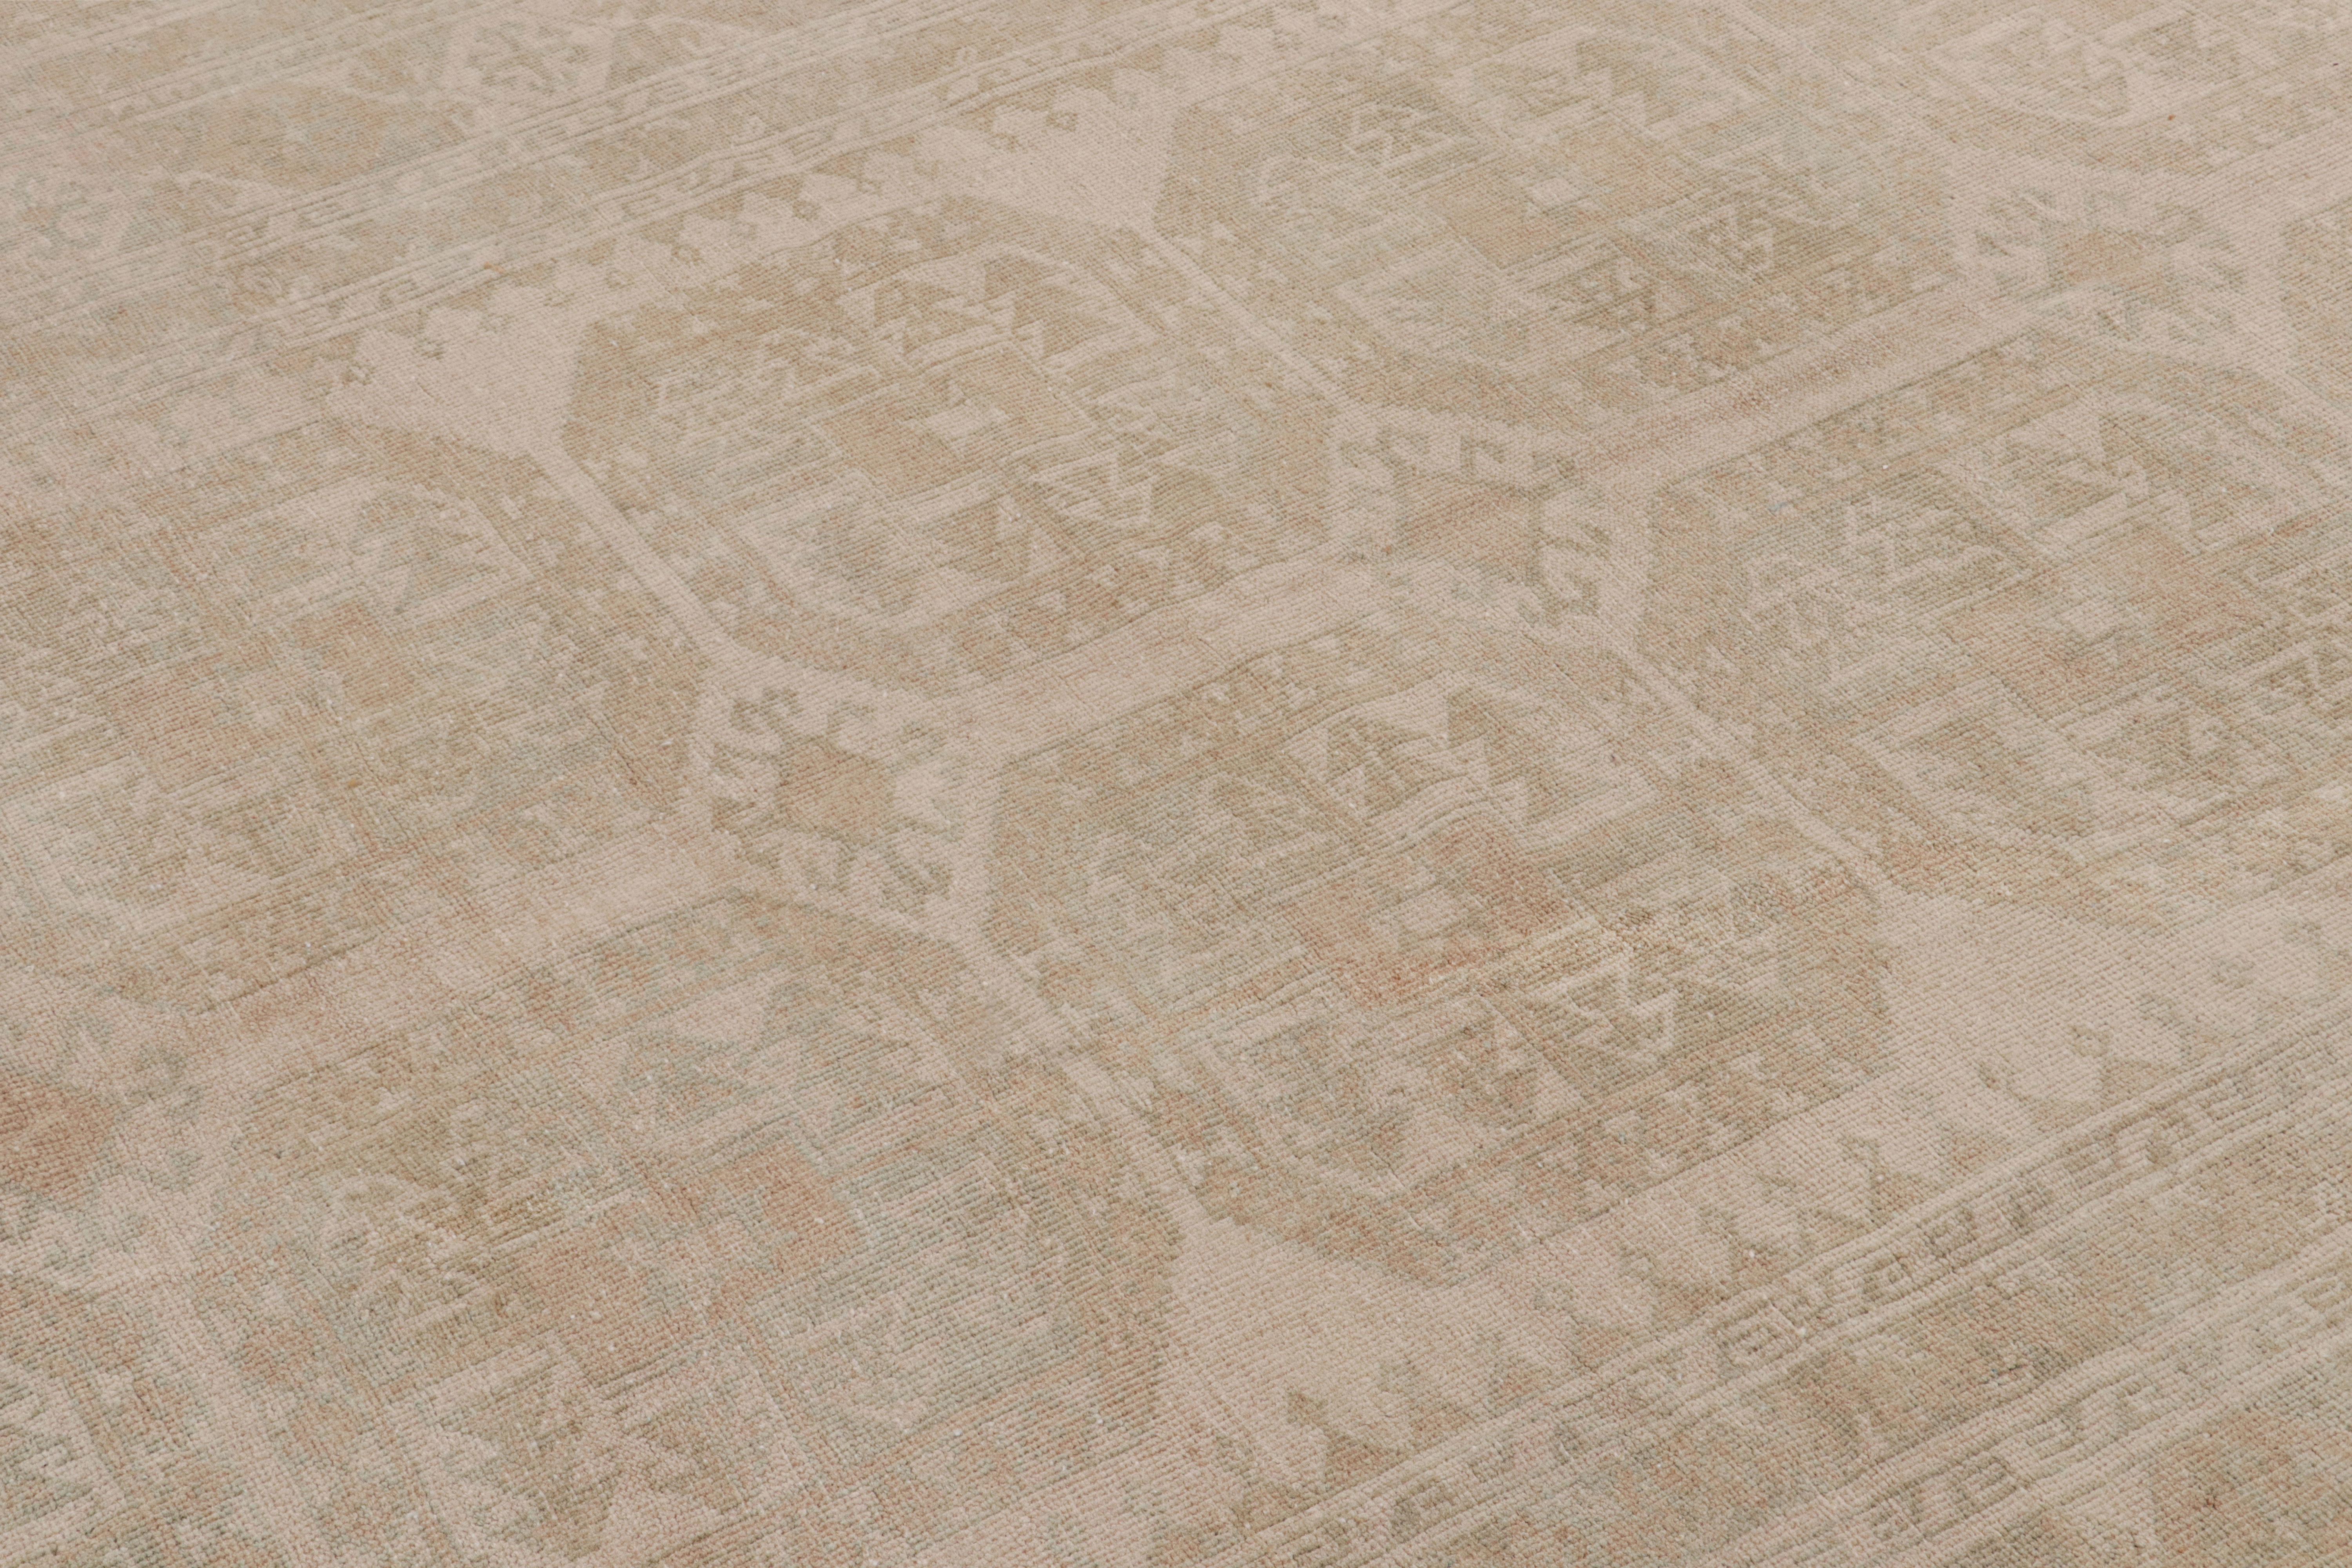 Ce tapis vintage 7x9 est considéré comme un rare tapis Ersari du milieu du siècle, noué à la main en laine et originaire de Turquie vers 1950-1960.

Sur le Design :

Les Ersari sont une sous-tribu du peuple turkmène, souvent connue pour ses dessins